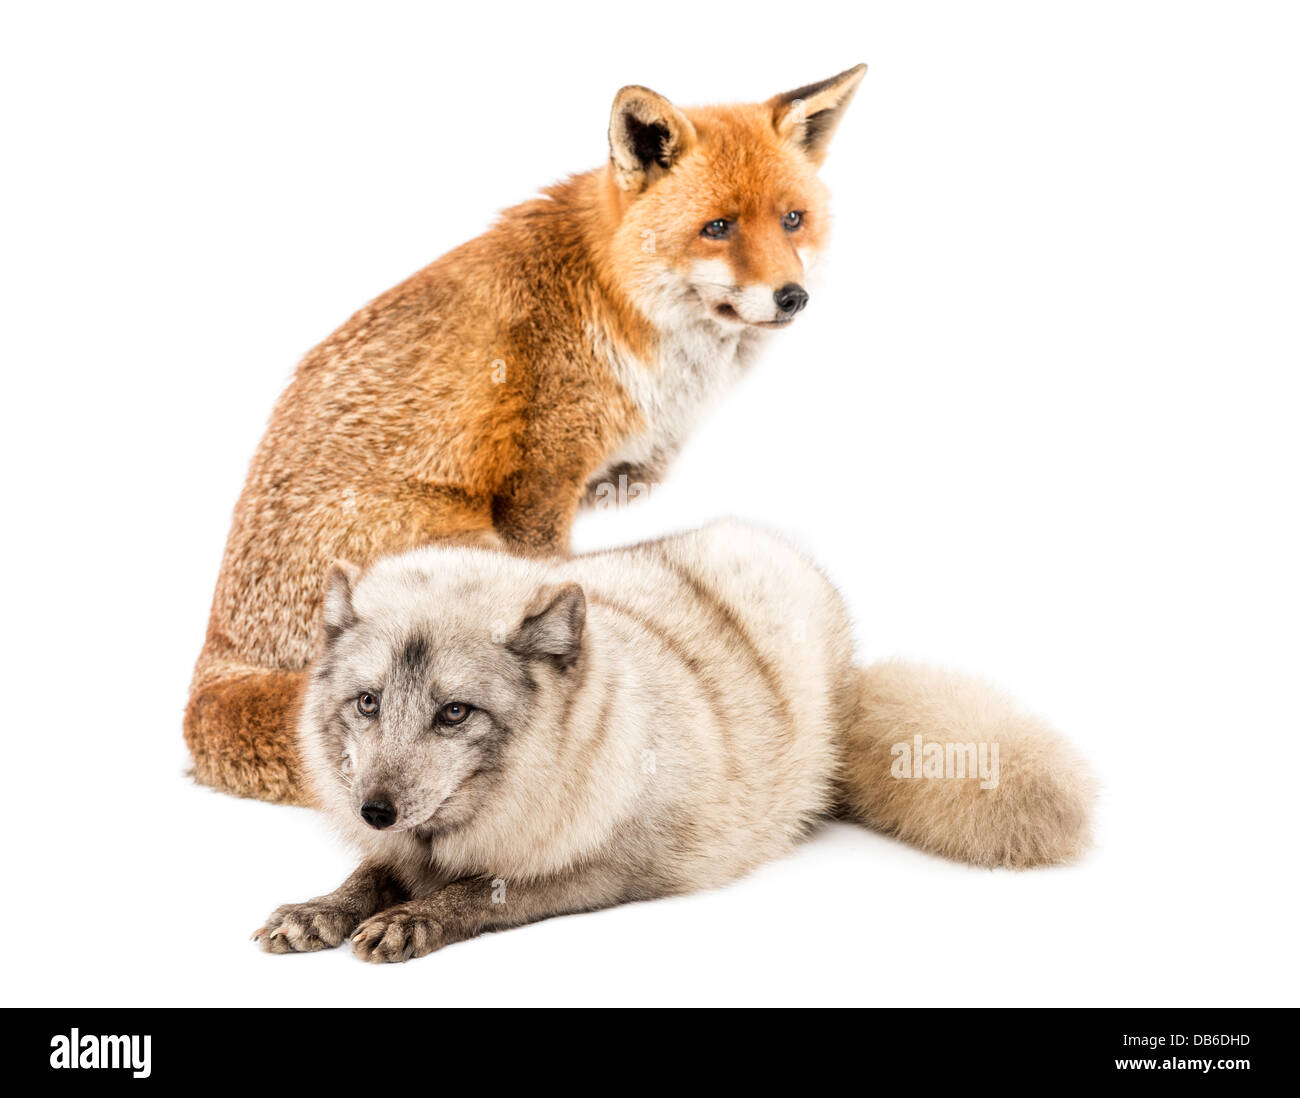 Le renard roux, Vulpes vulpes, assis à côté de renard arctique, Vulpes lagopus, avoir menti sur fond blanc Banque D'Images